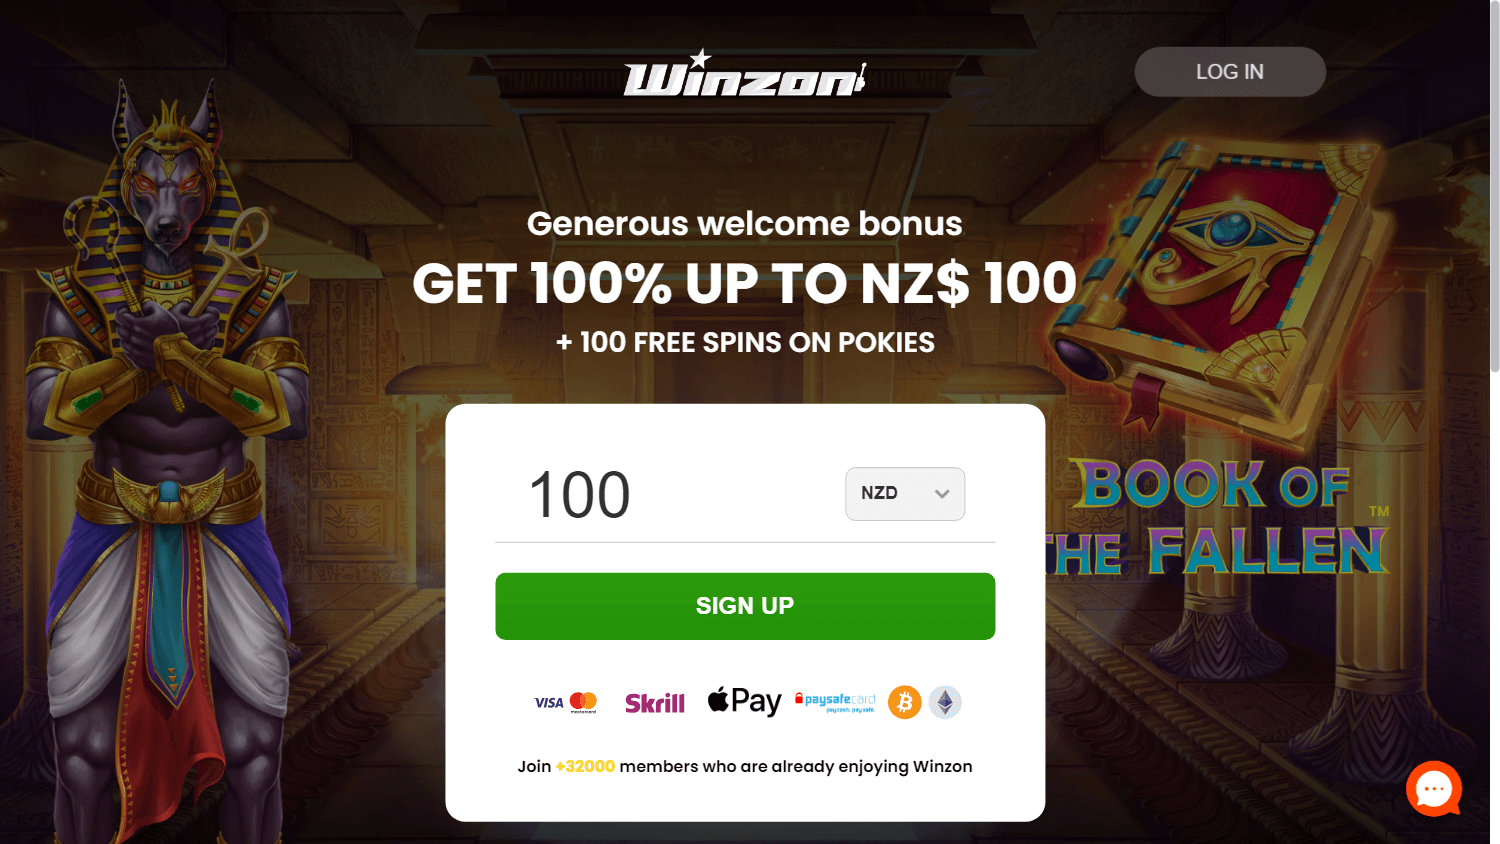 winzon_casino_homepage_desktop